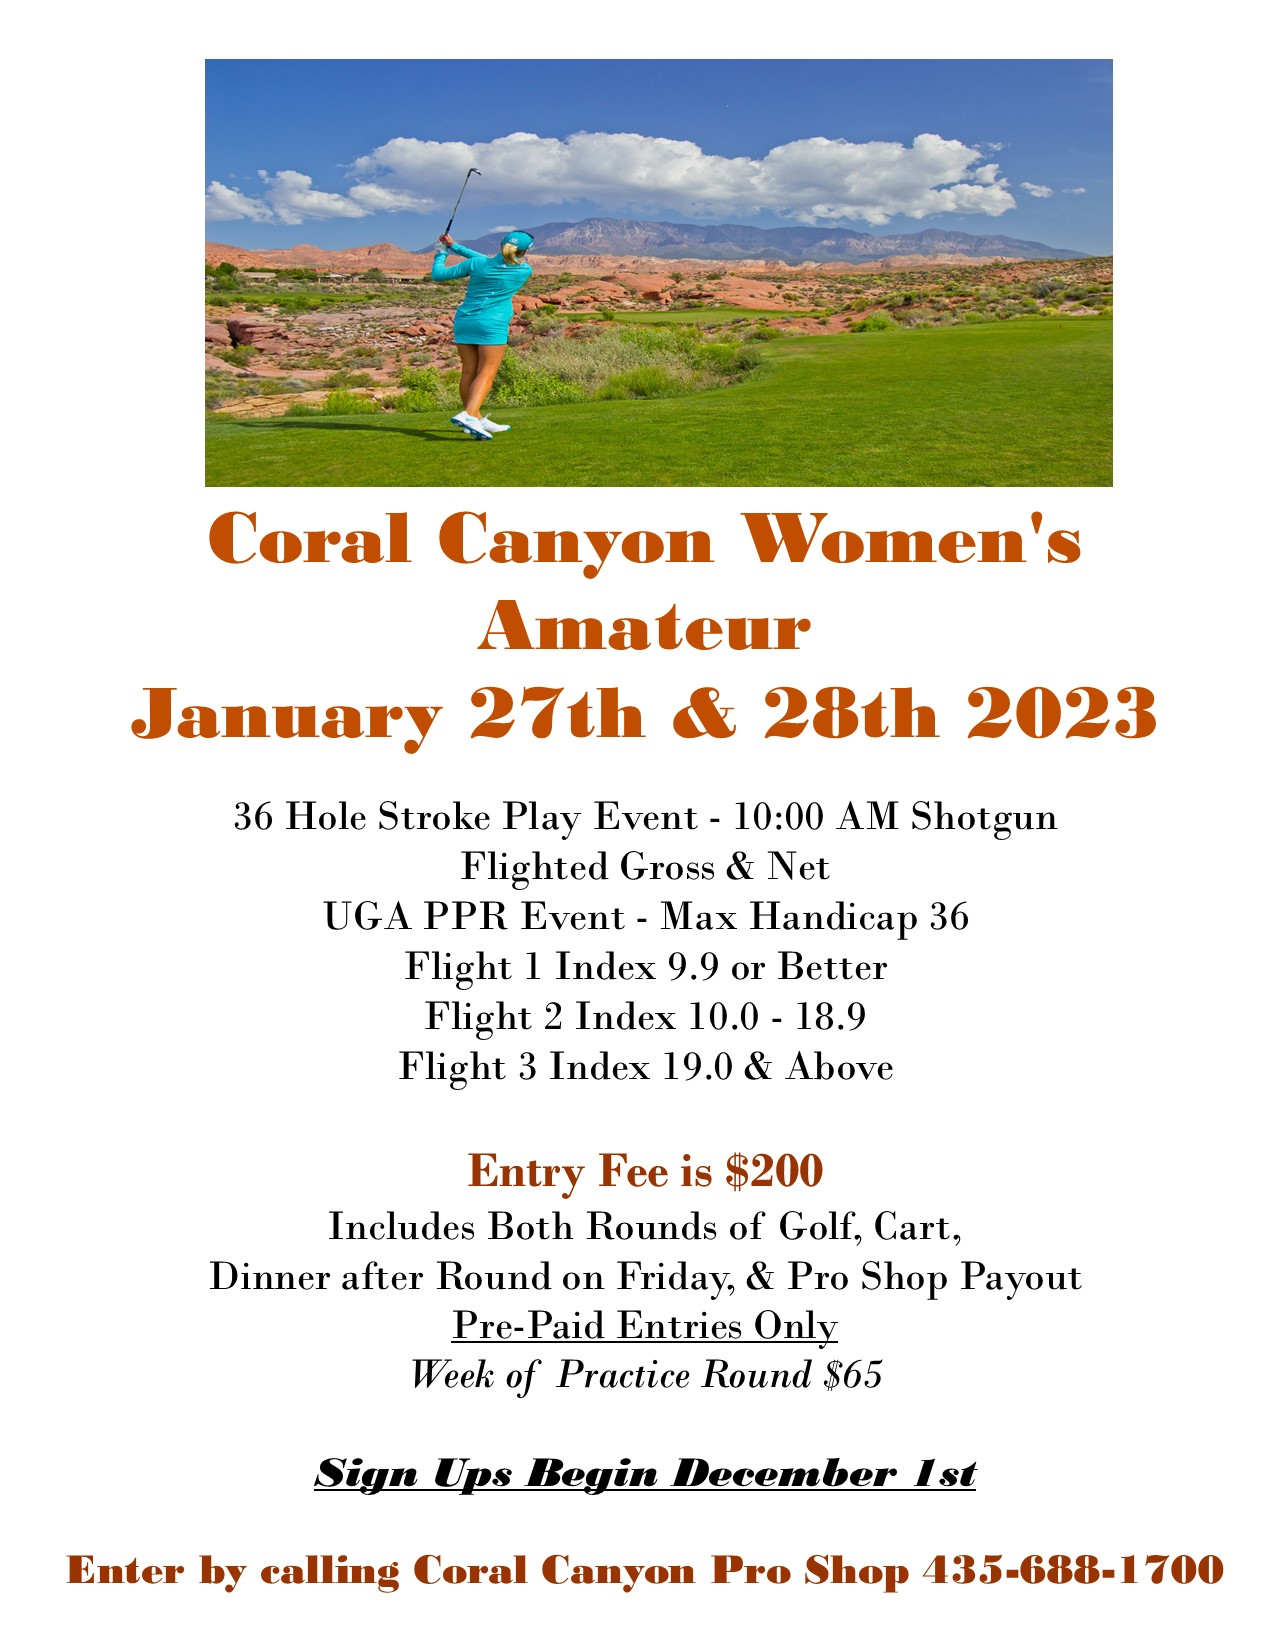 Coral Canyon Women's Amateur Tournament Flyer 2023